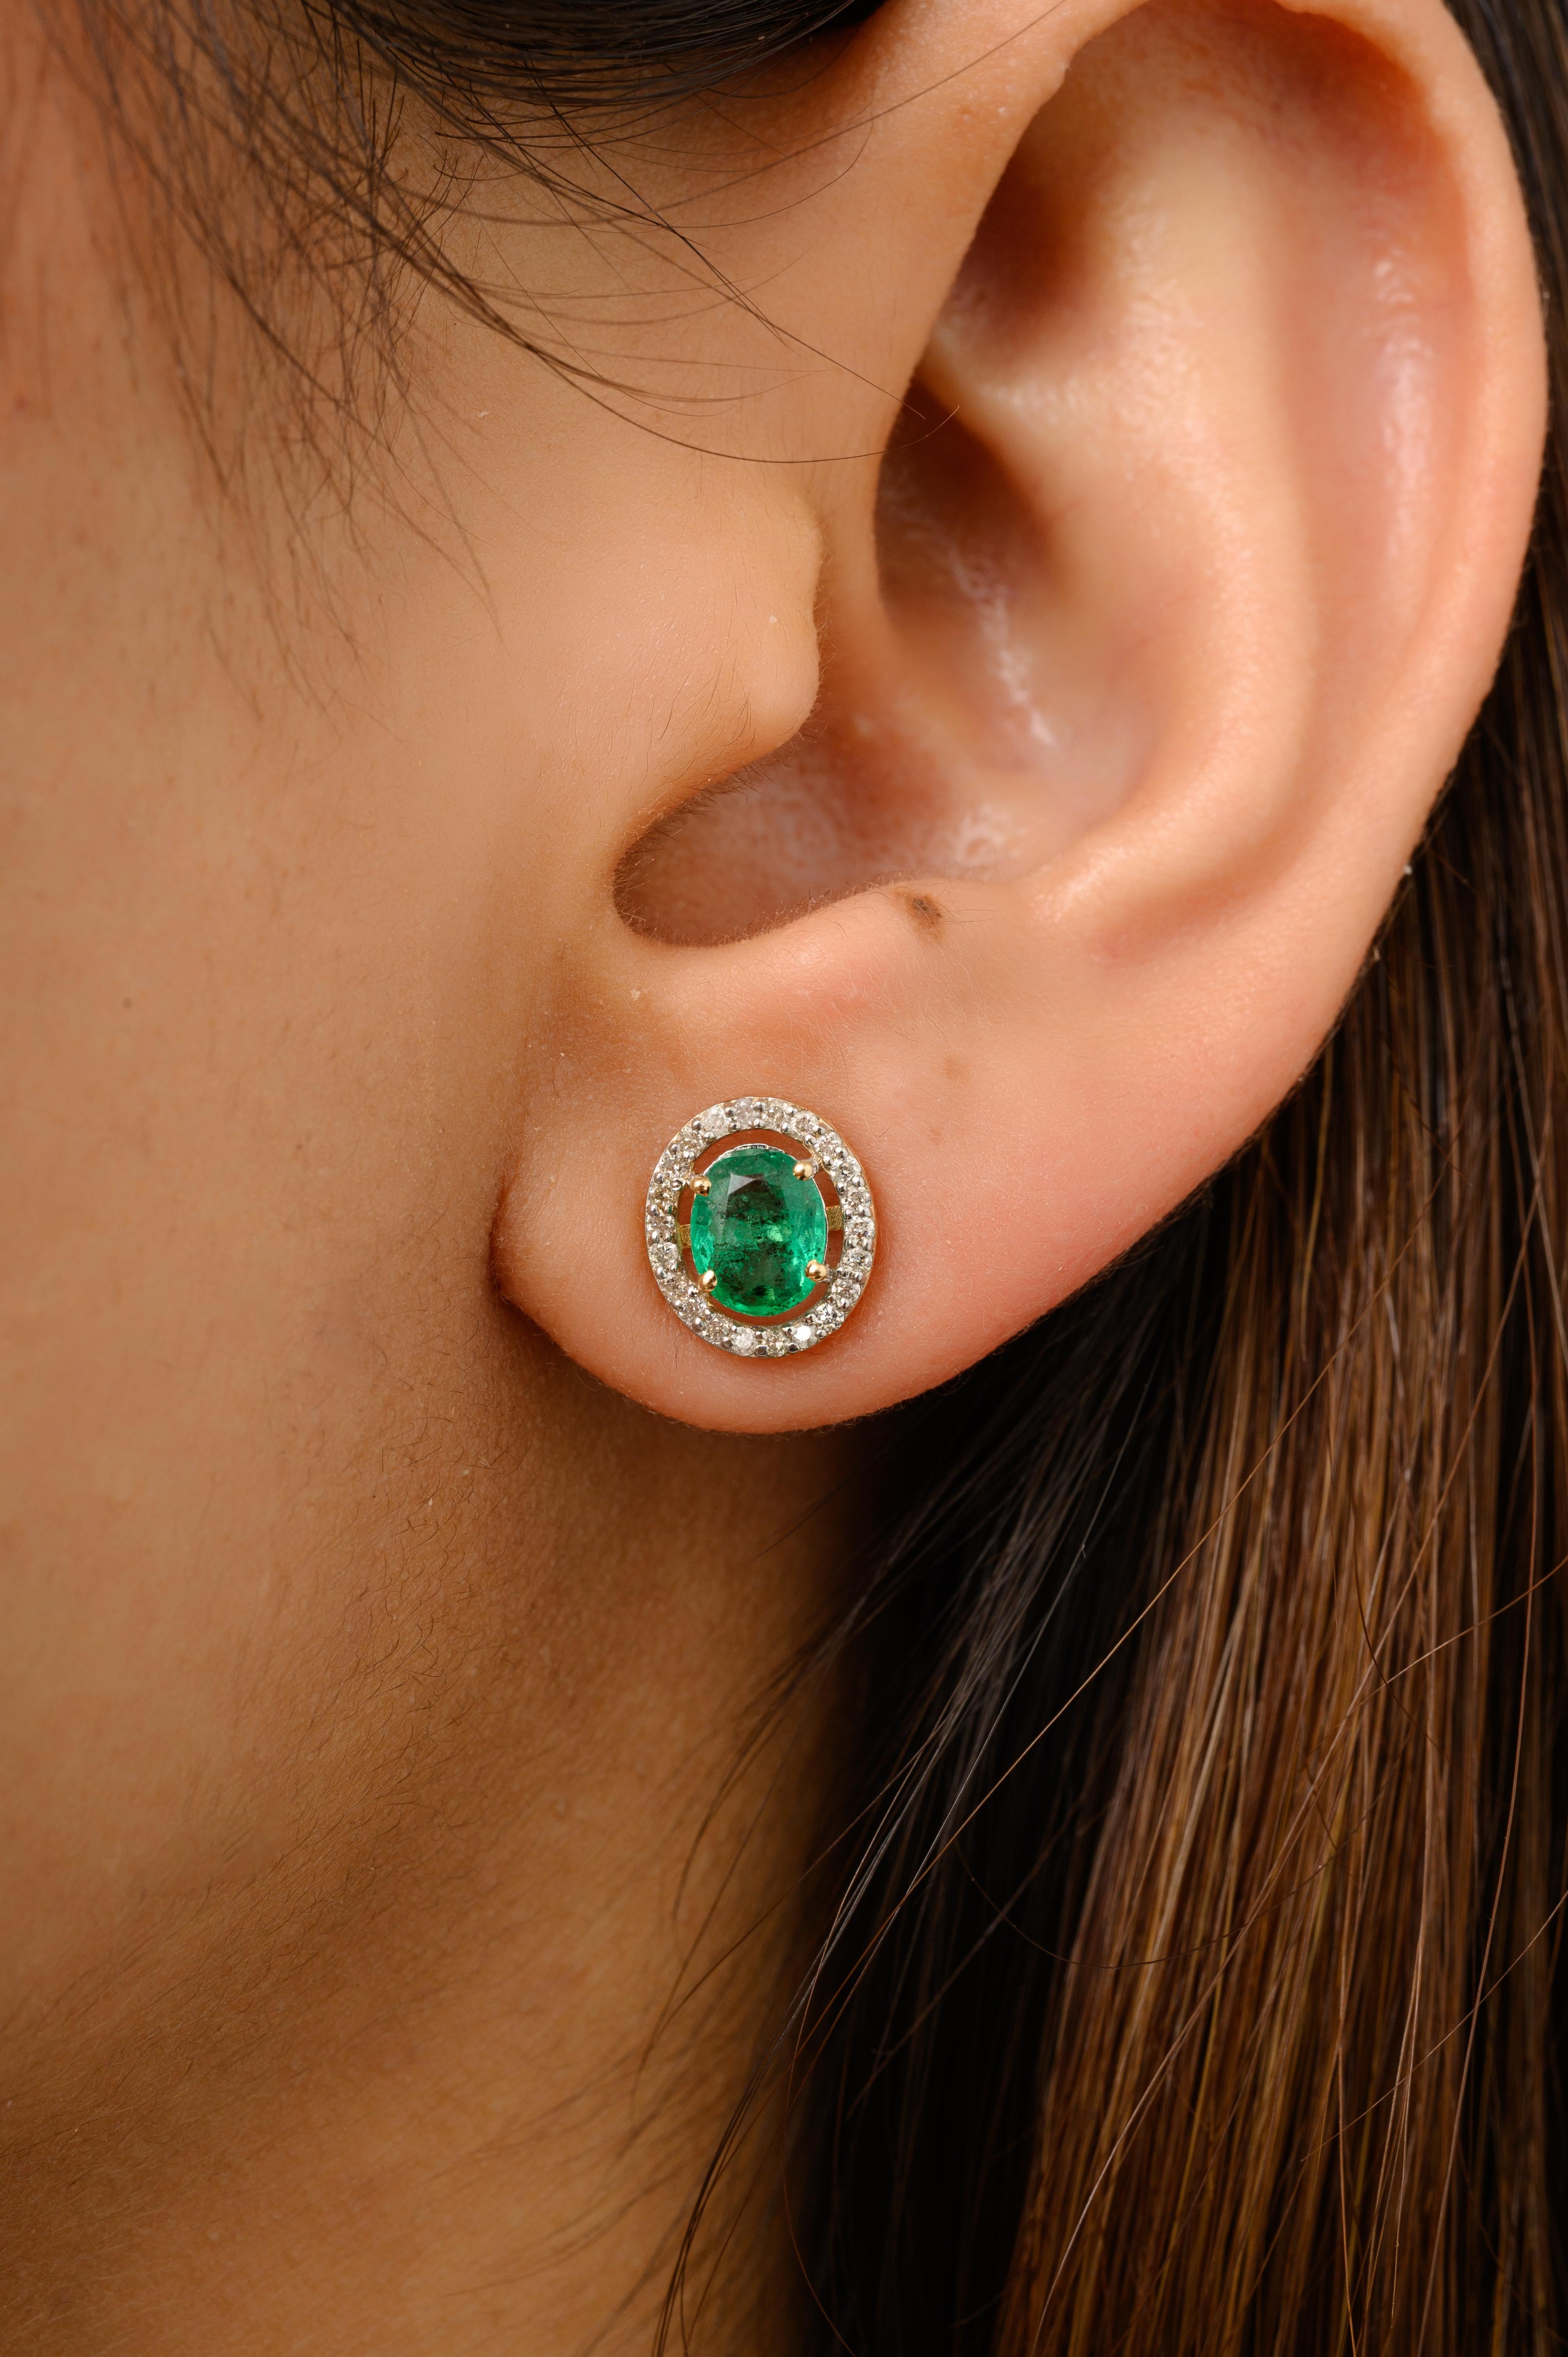 Les boucles d'oreilles en or 14 carats avec émeraude véritable et diamant en forme de halo vous permettront d'affirmer votre style. Vous aurez besoin de boucles d'oreilles pour affirmer votre look. Ces boucles d'oreilles créent un look étincelant et